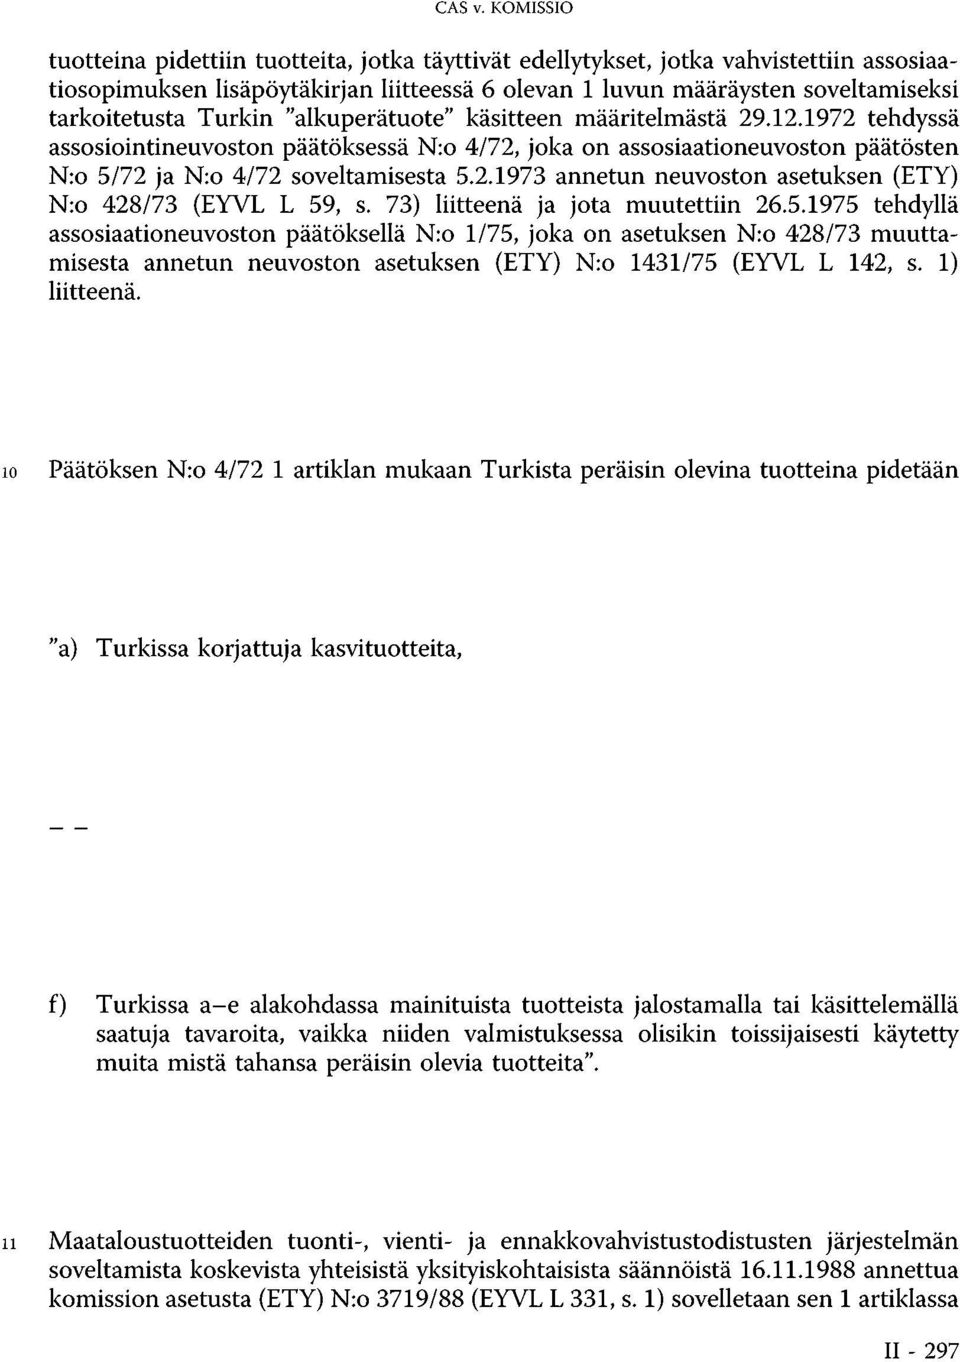 Turkin "alkuperätuote" käsitteen määritelmästä 29.12.1972 tehdyssä assosiointineuvoston päätöksessä N:o 4/72, joka on assosiaationeuvoston päätösten N:o 5/72 ja N:o 4/72 soveltamisesta 5.2.1973 annetun neuvoston asetuksen (ETY) N:o 428/73 (EYVL L 59, s.